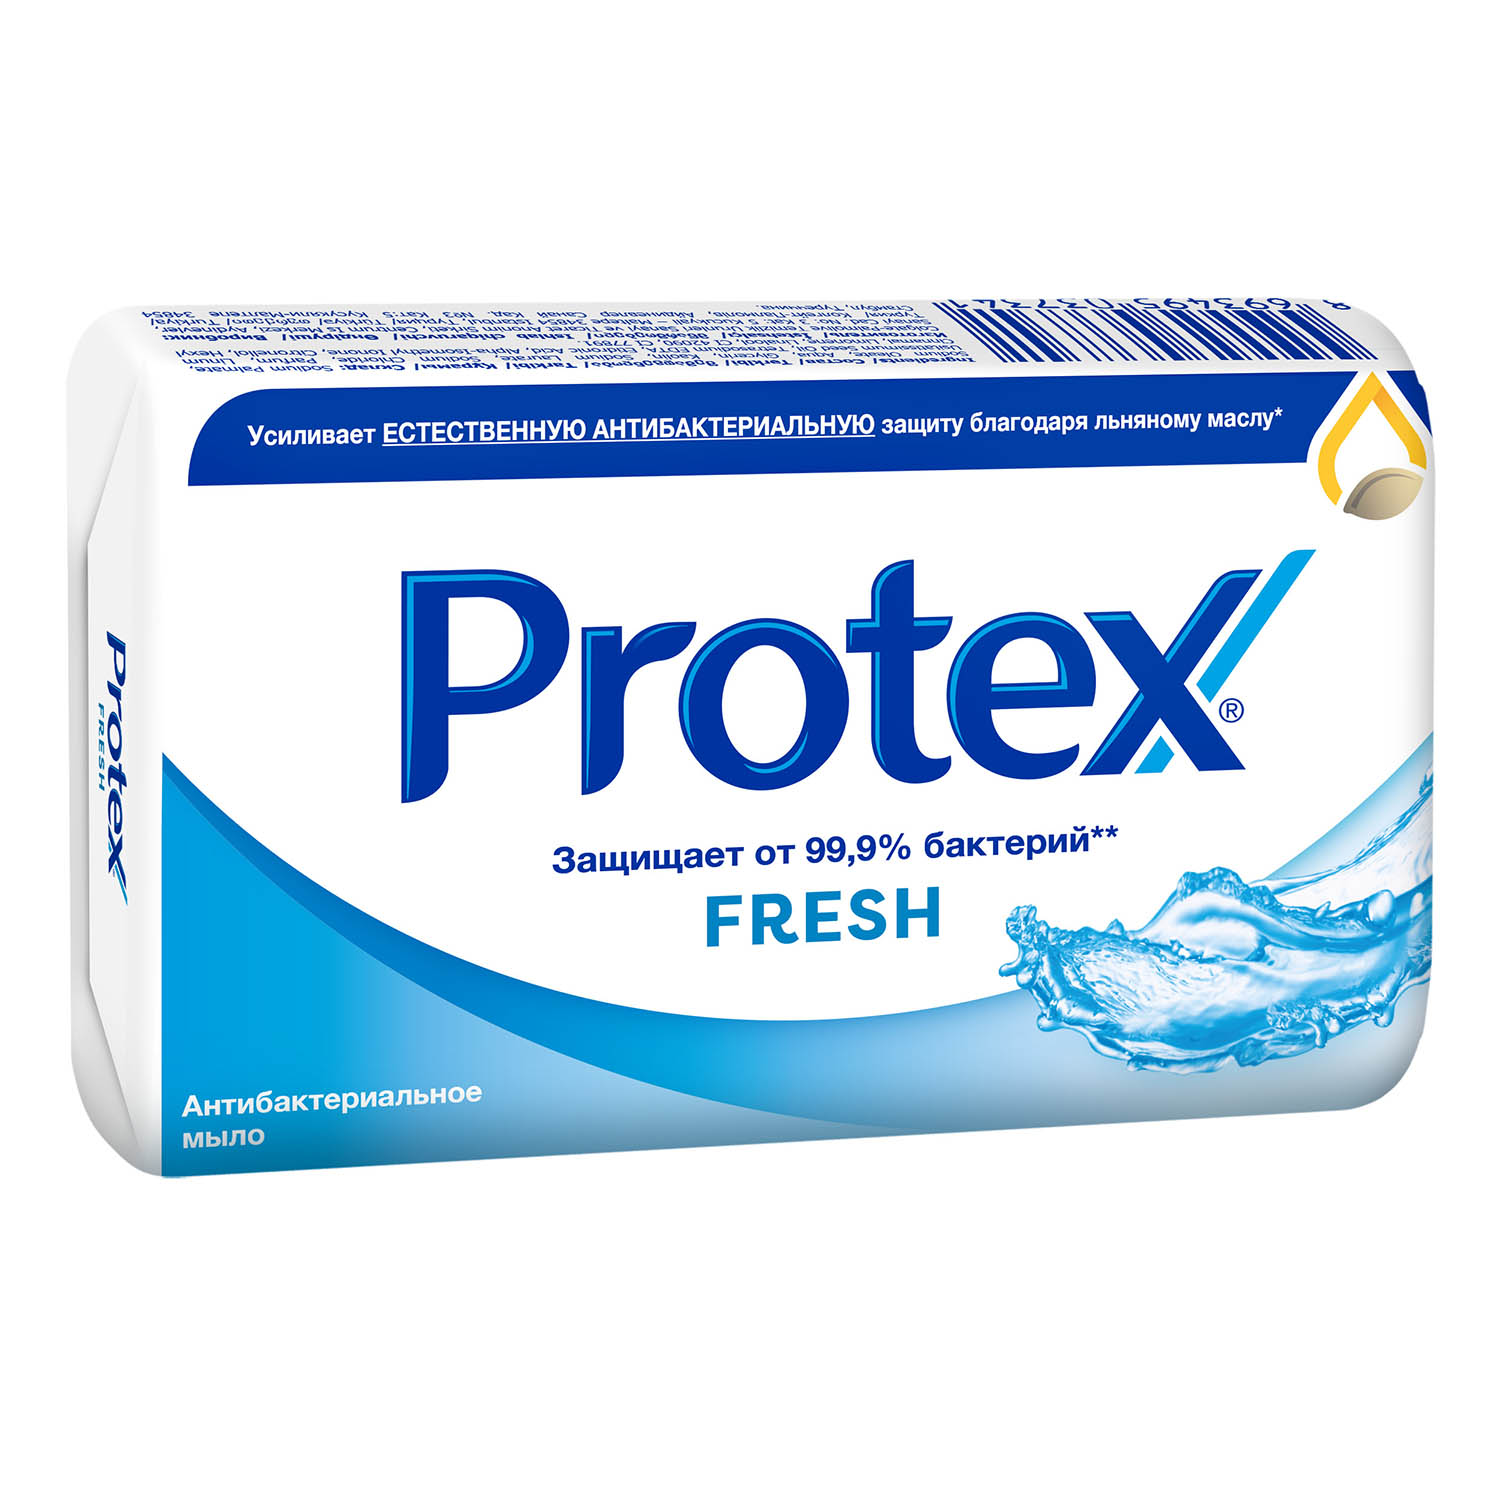 Мыло туалетное Protex Fresh антибактериальное, 90 г мыло protex aloe антибактериальное 90 г